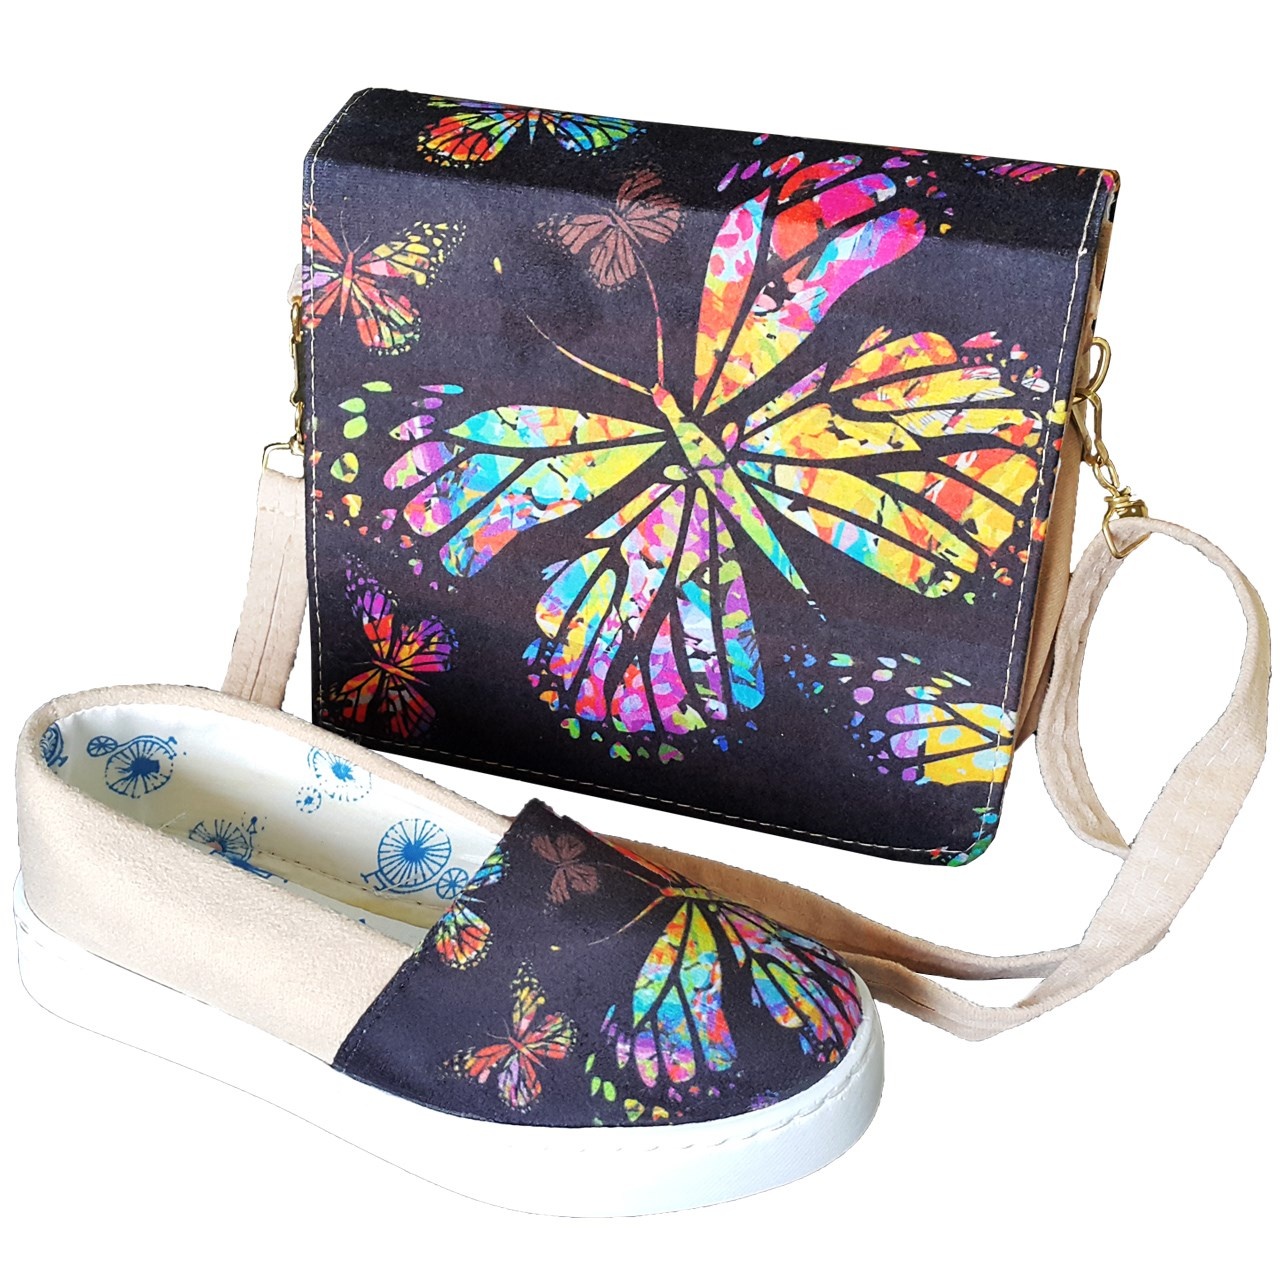 ست کیف و کفش روشا مدل Beautiful Butterflies  به همراه جاکلیدی طرح برج ایفل هدیه